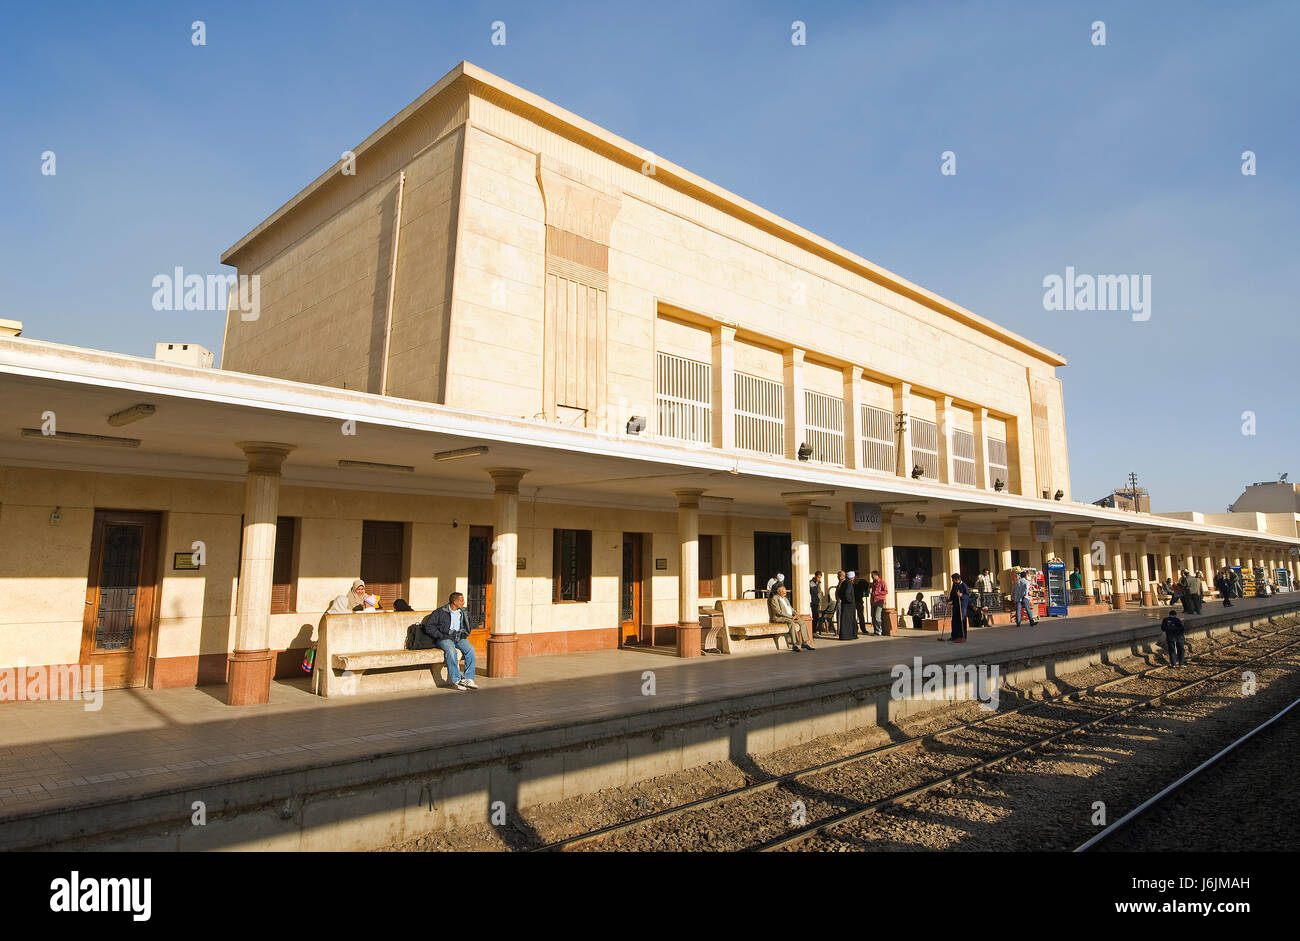 Bahnhof Stadt Afrika Sightseeing Ägypten Stadtwappen Bau Gebäude station Stockfoto